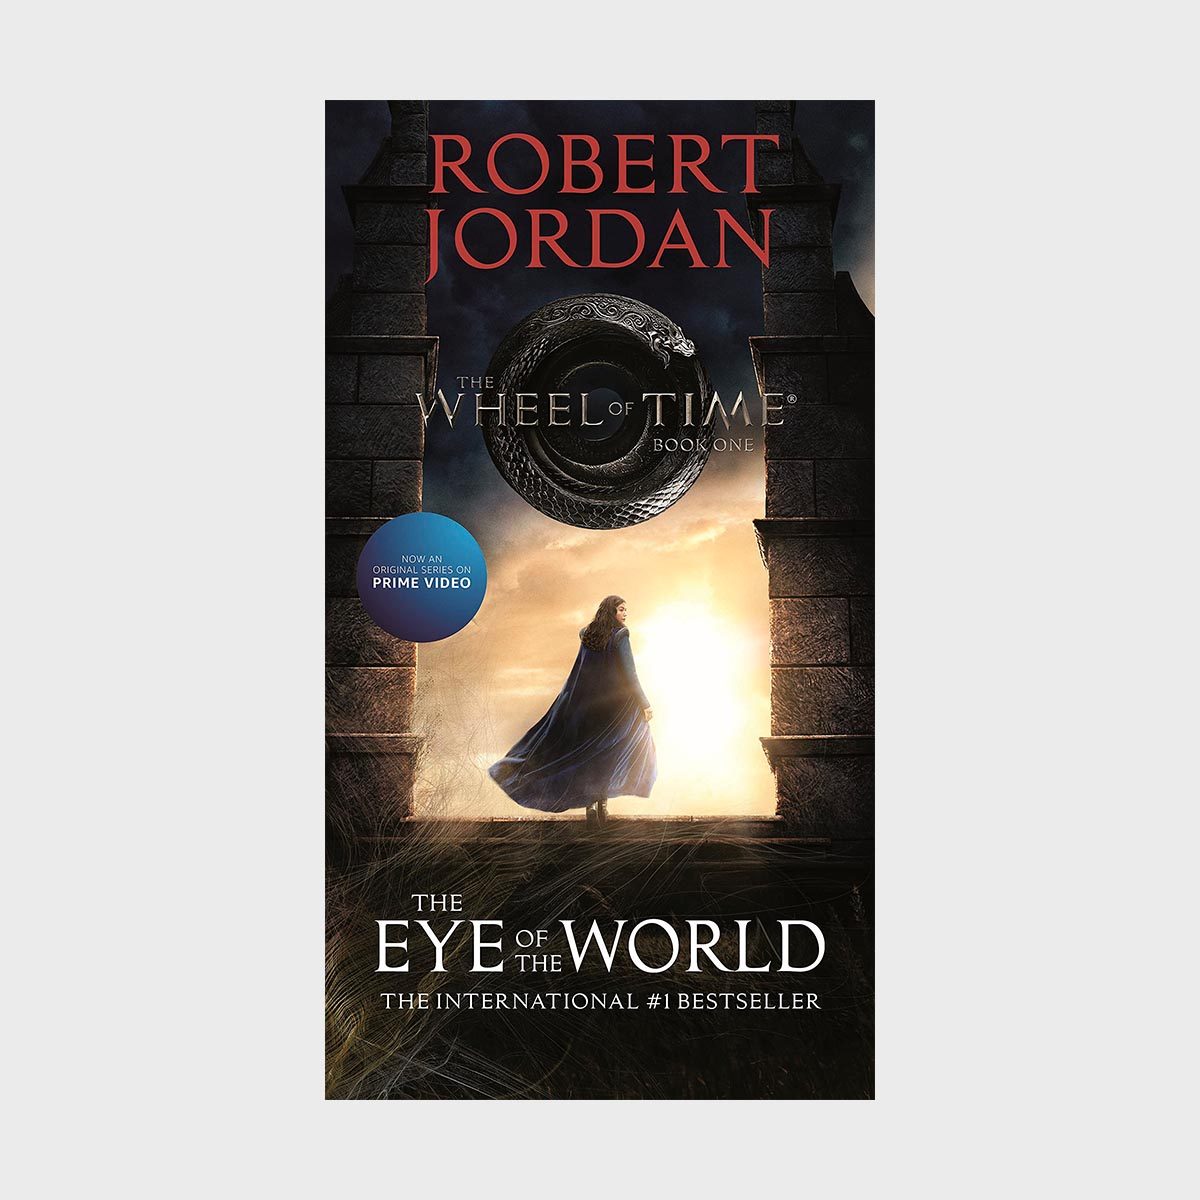 The Wheel of Time series by Robert Jordan (1990)